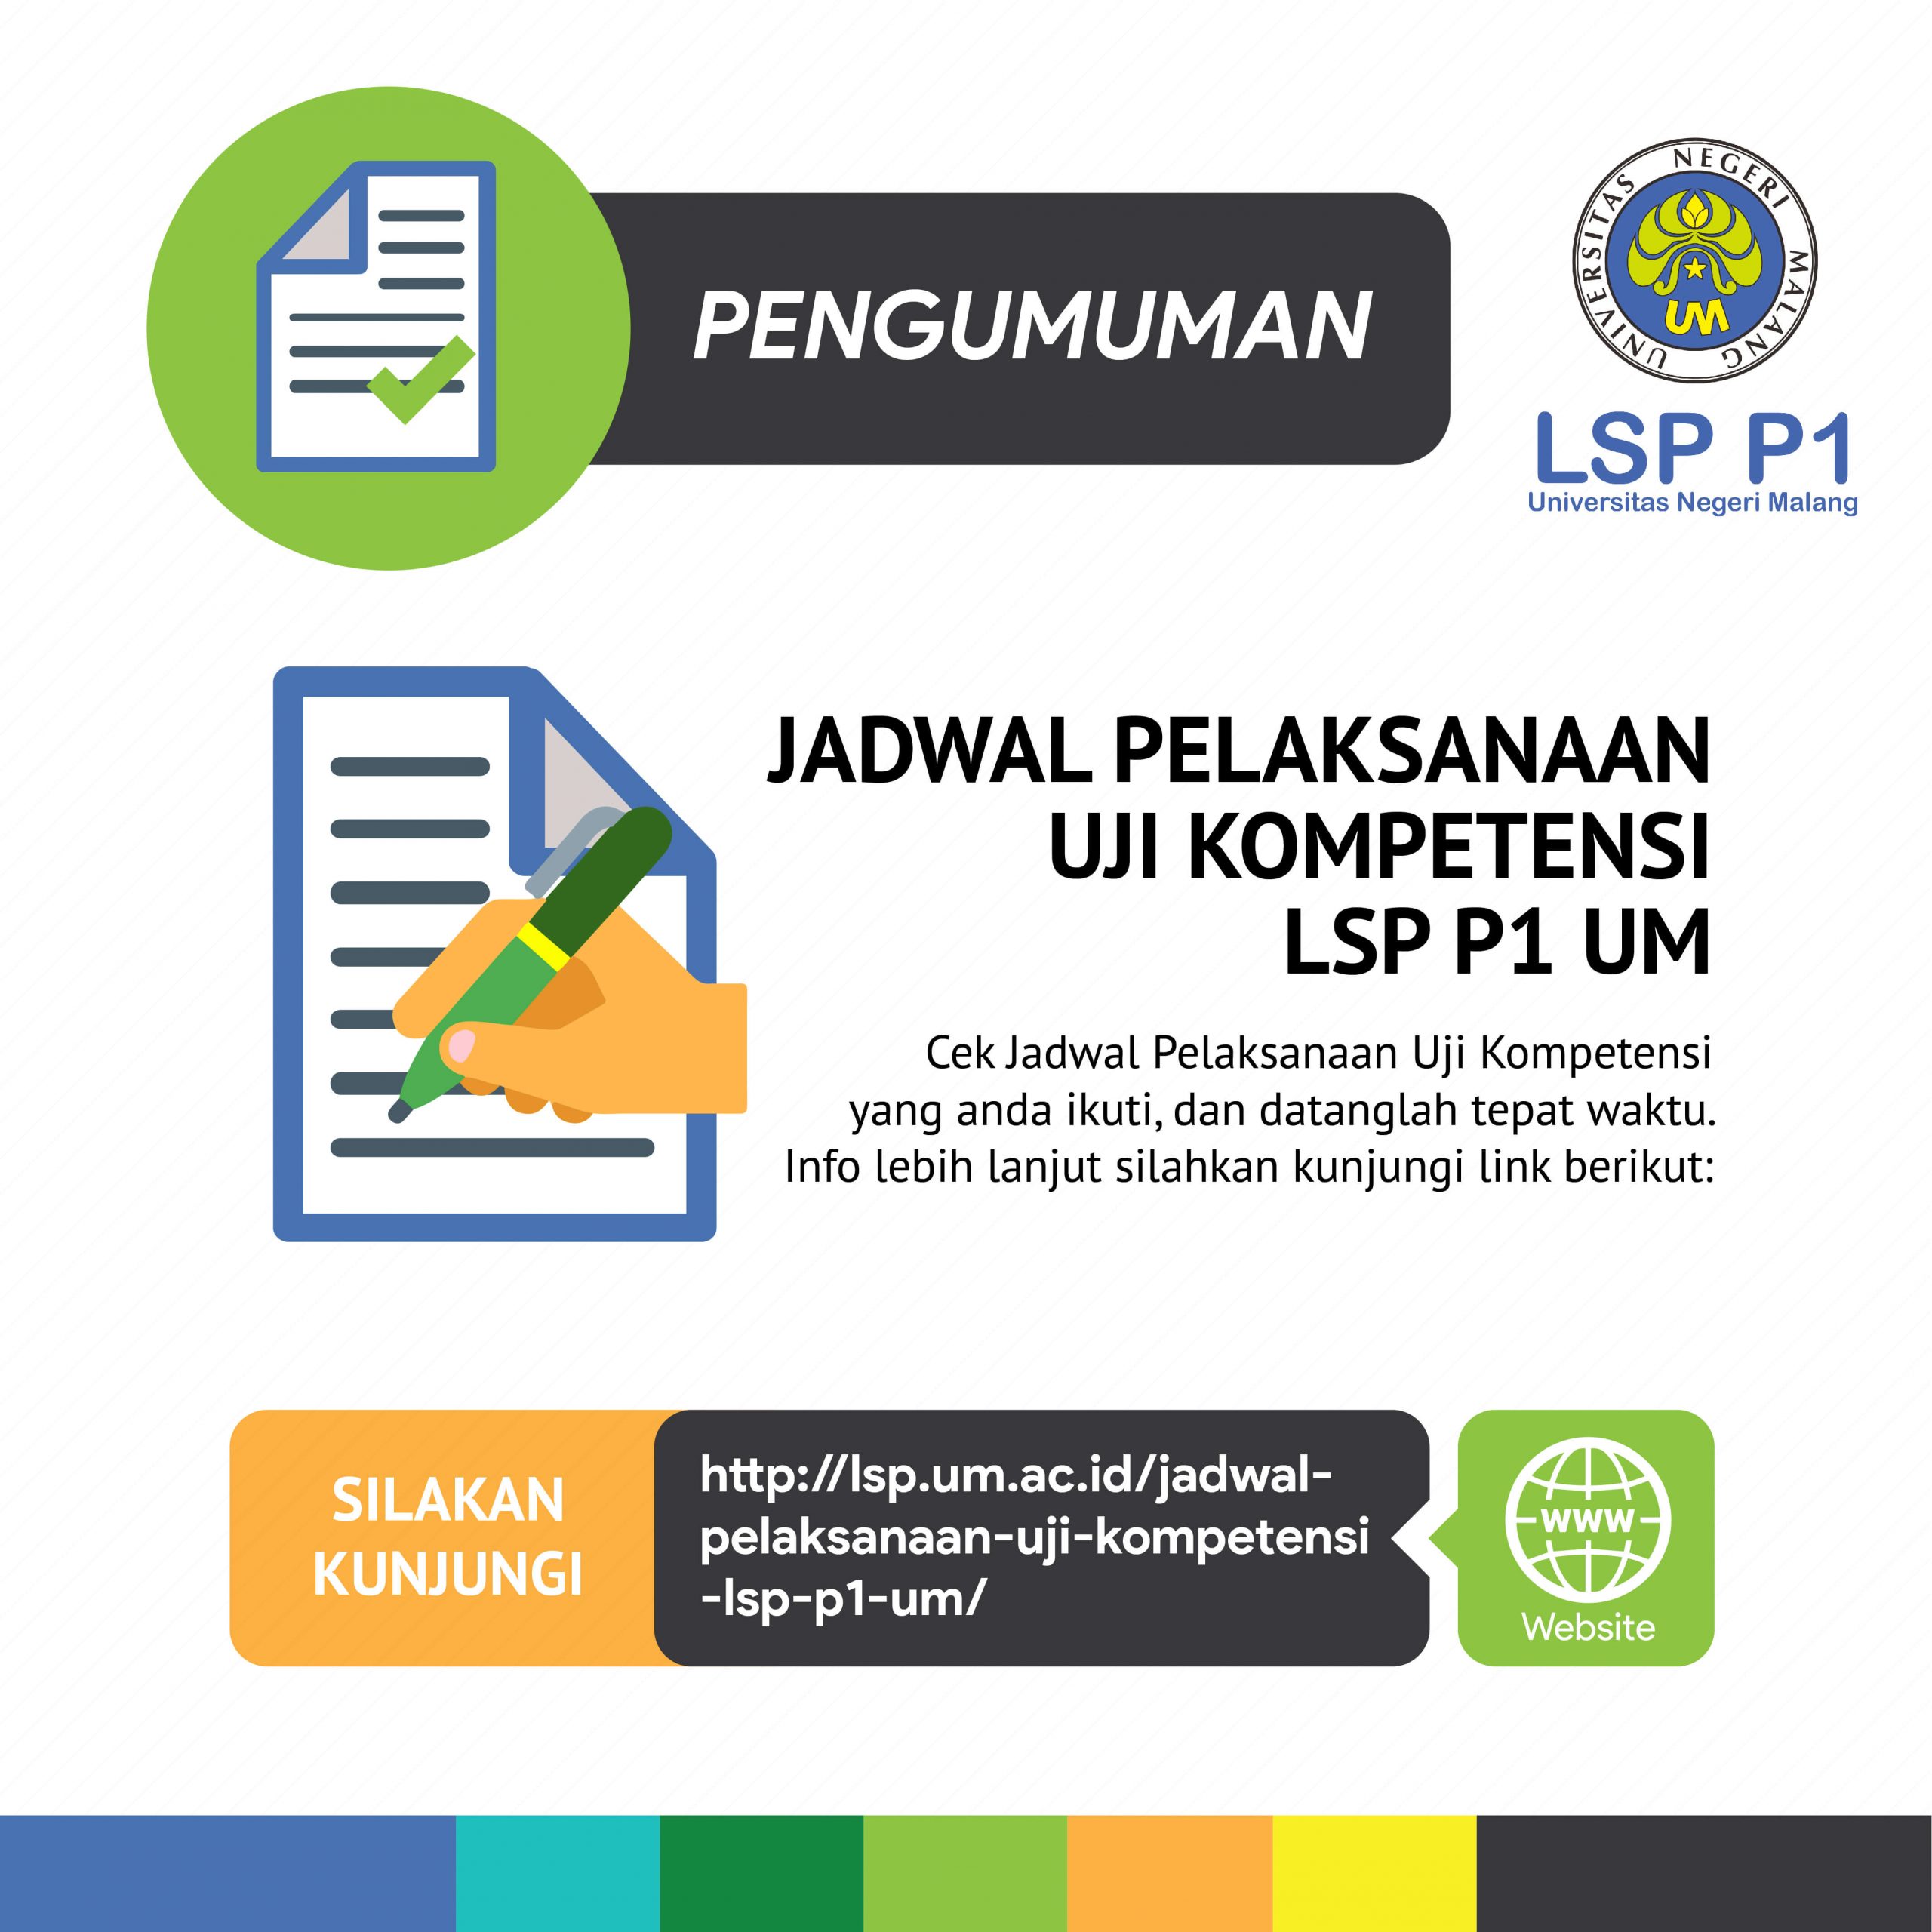 Update Jadwal Pelaksanaan Uji Kompetensi LSP P1 UM (Revisi 20-08-2019)